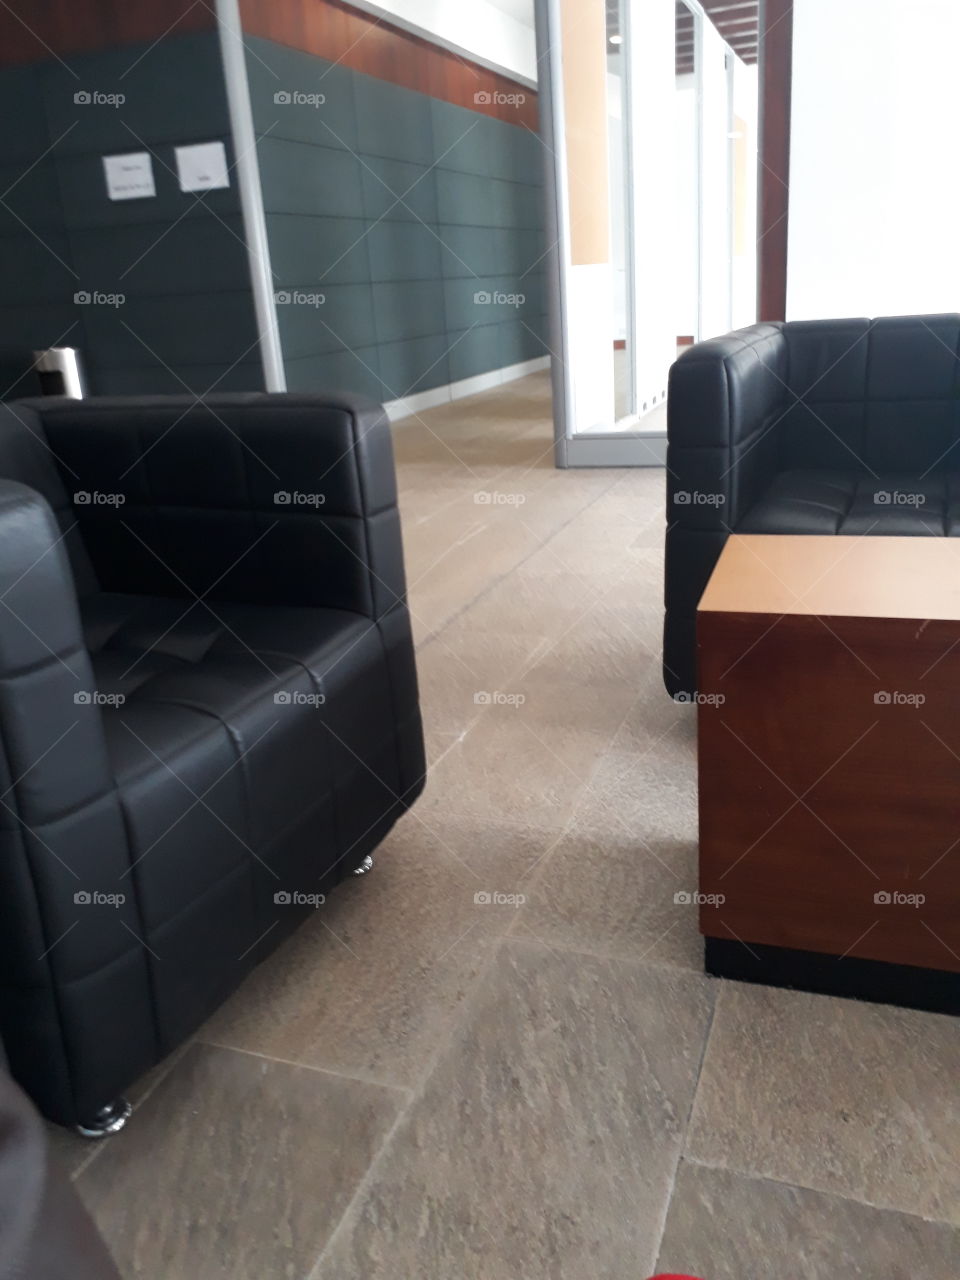 sala de de espera o sillones negros para descansar con mesa de centro de madera